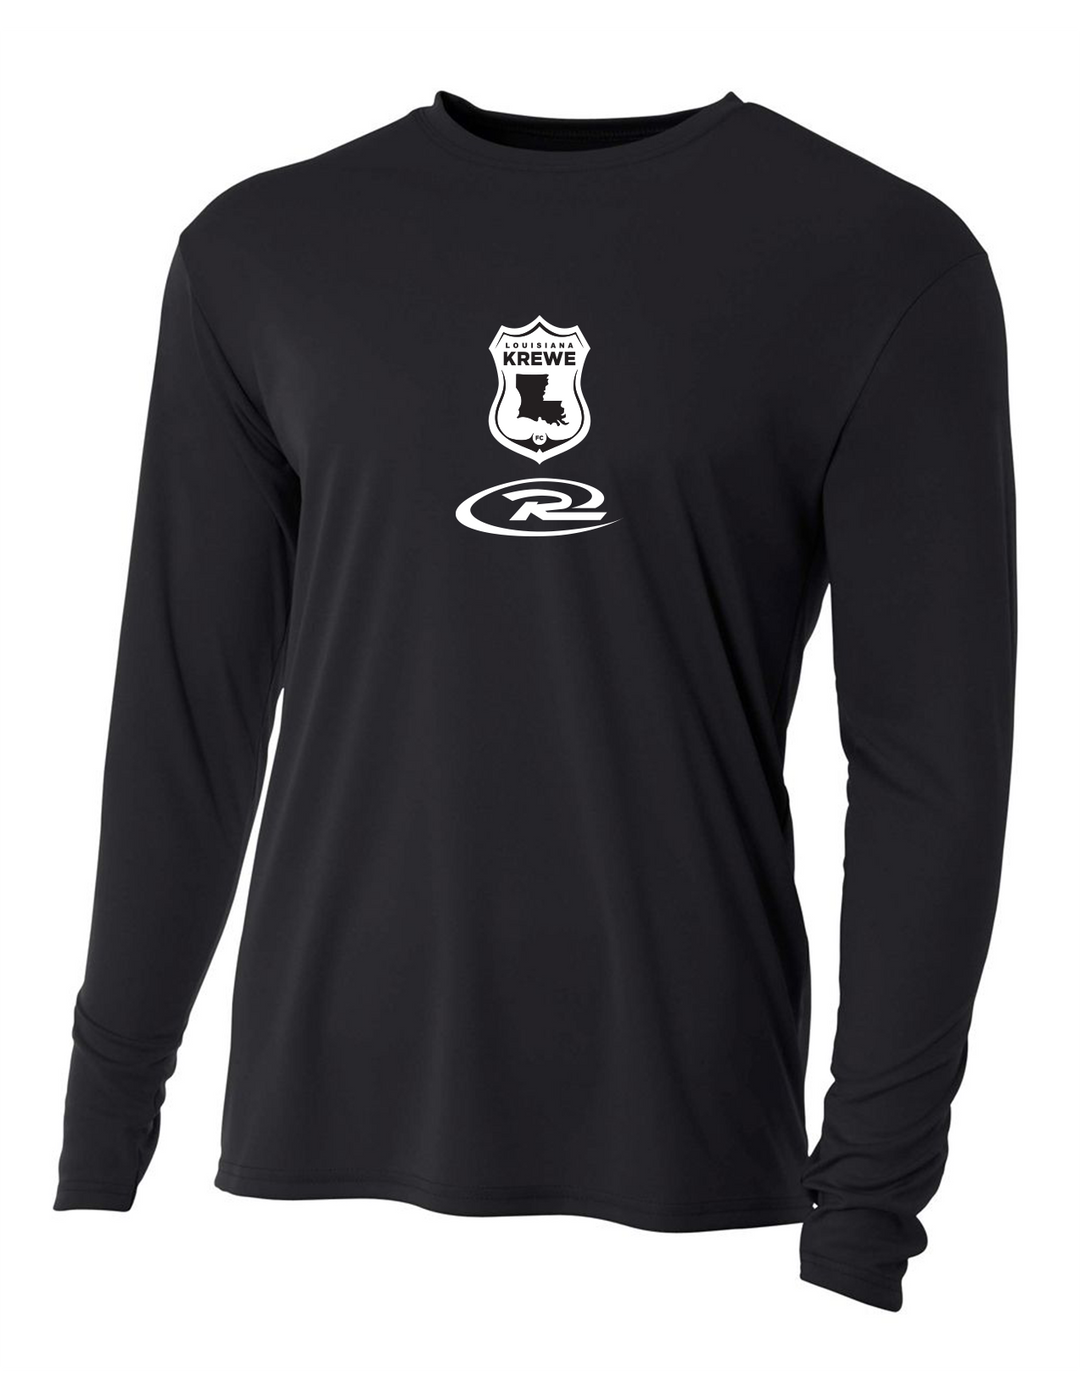 A4 La Krewe-Rush Long-Sleeve Shirt FC - Black, Silver Or White LA KREWE RUSH Black Mens Small - Third Coast Soccer